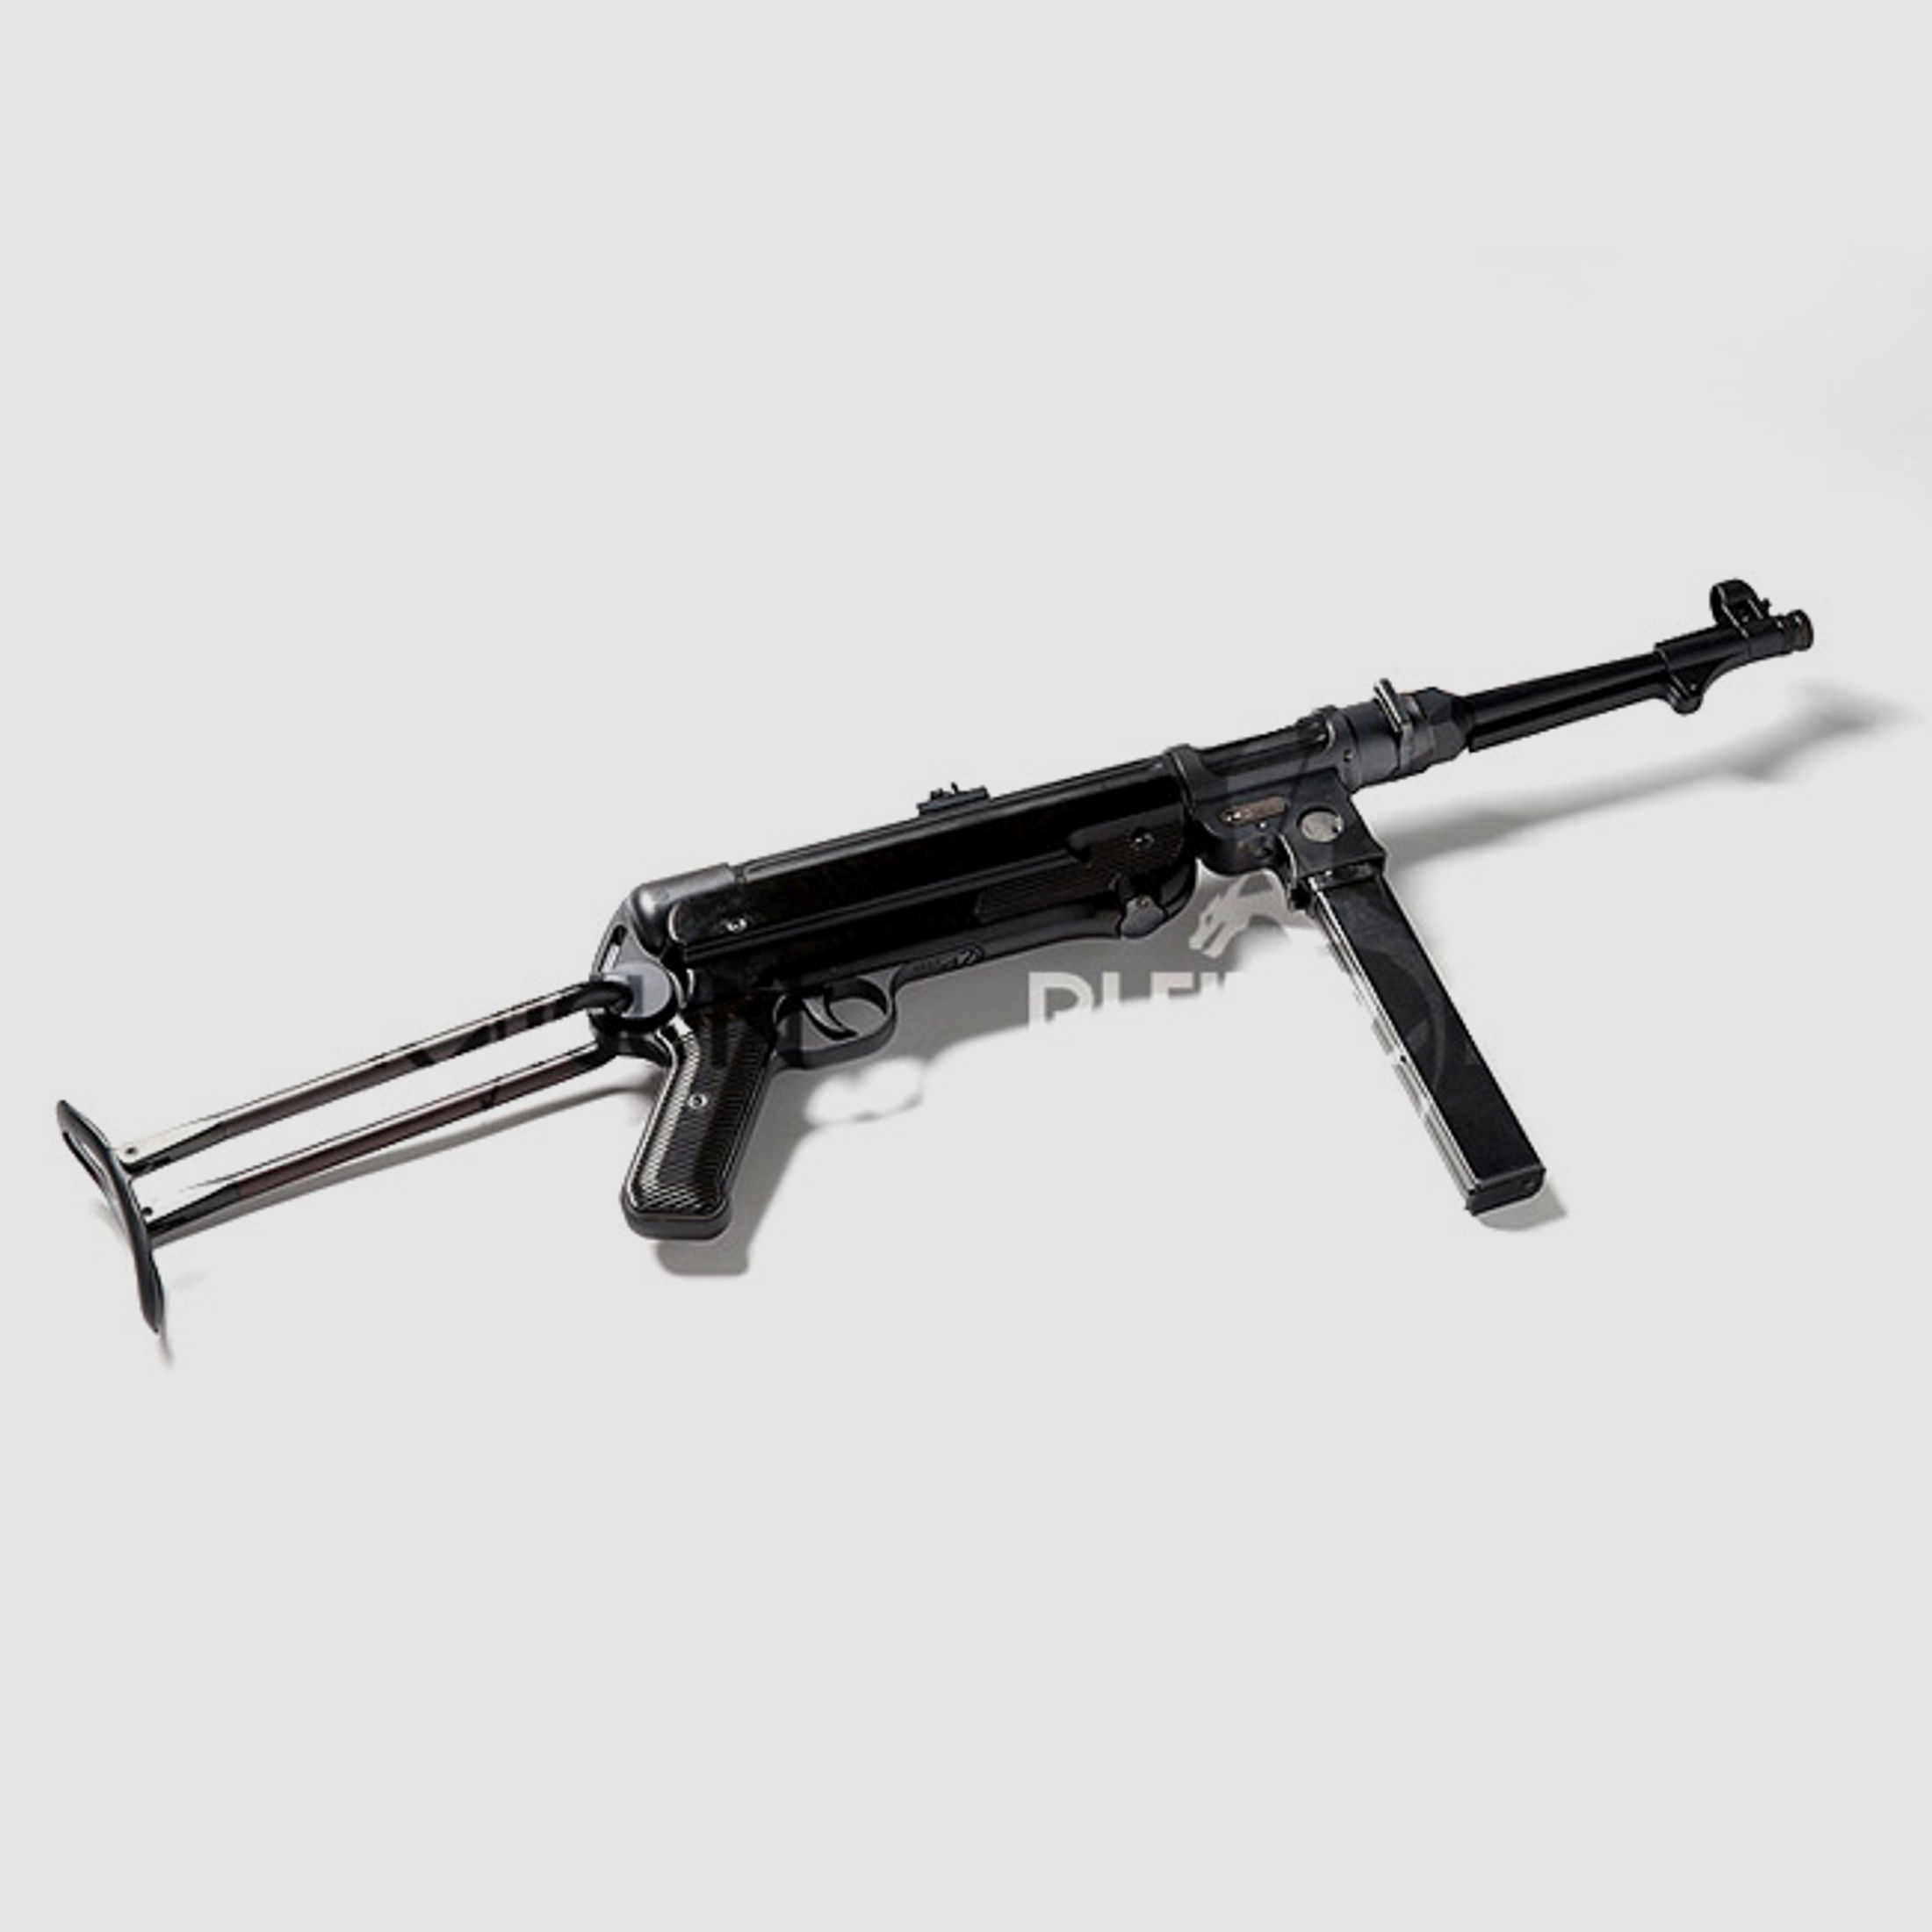 Selbstladekarabiner MP 40 – BD 38 9mm Luger